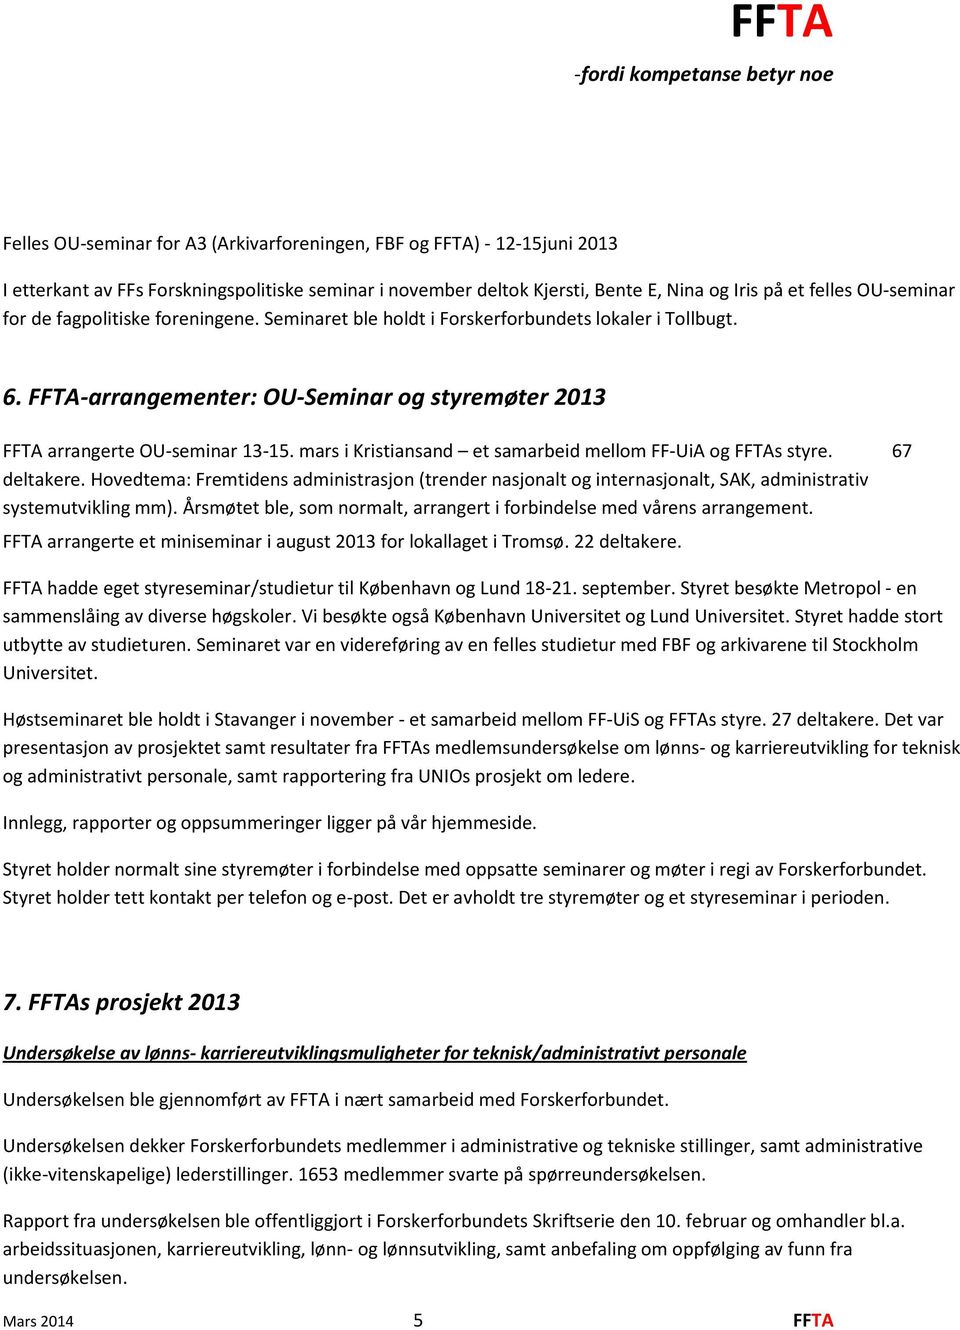 mars i Kristiansand et samarbeid mellom FF-UiA og FFTAs styre. 67 deltakere. Hovedtema: Fremtidens administrasjon (trender nasjonalt og internasjonalt, SAK, administrativ systemutvikling mm).